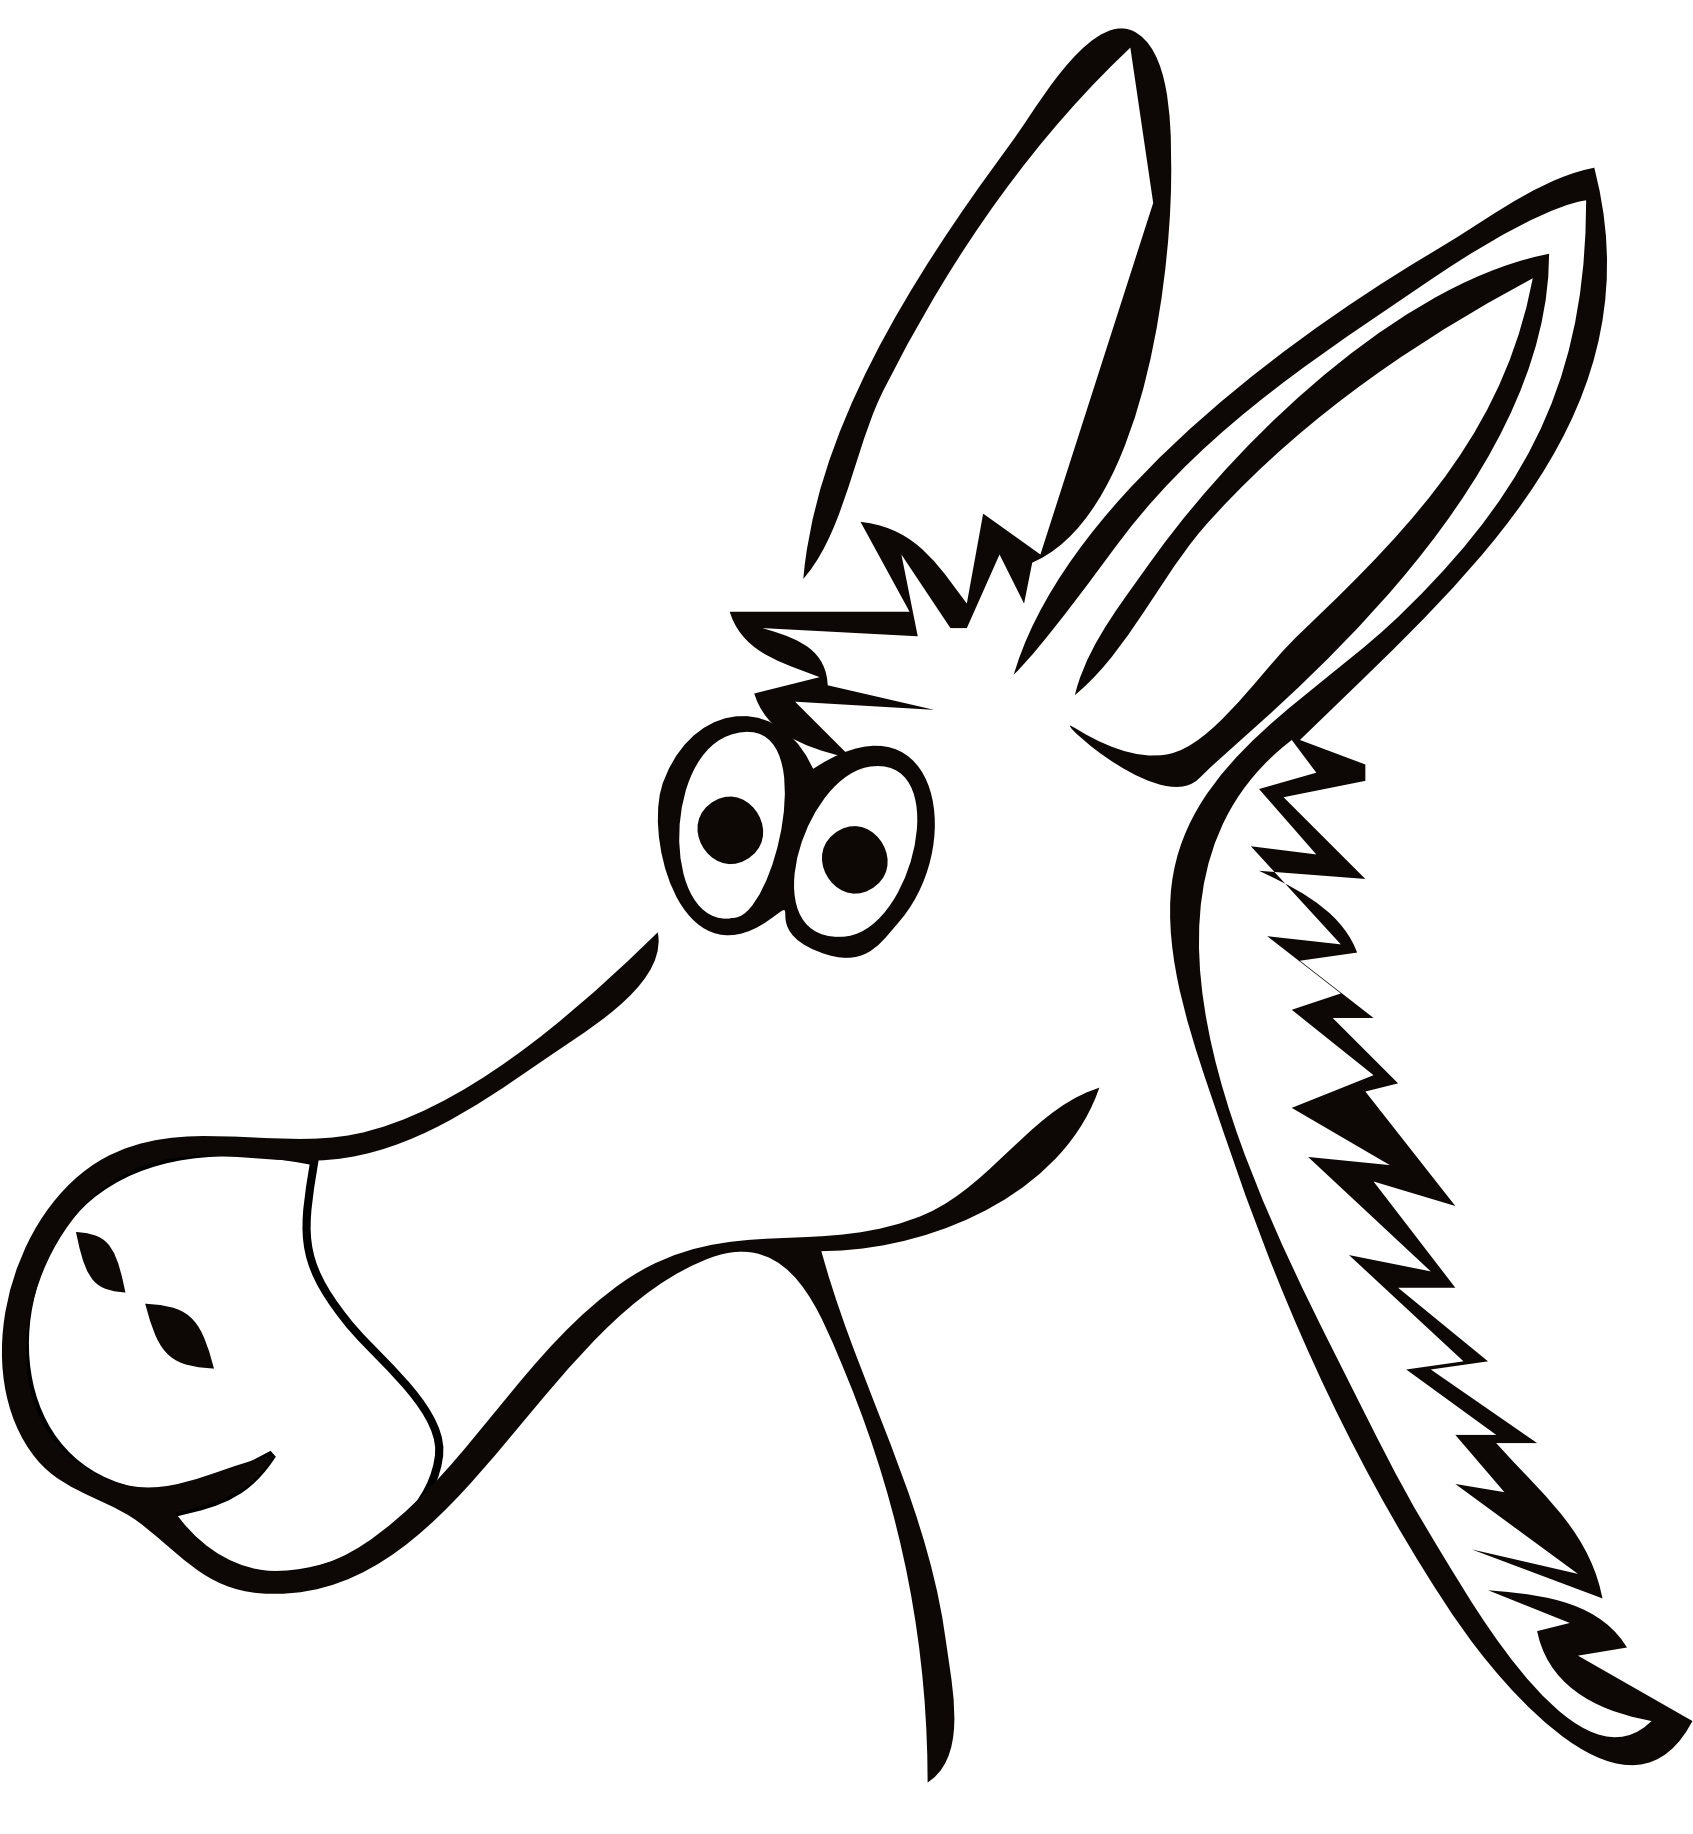 A Cartoon Of A Donkey